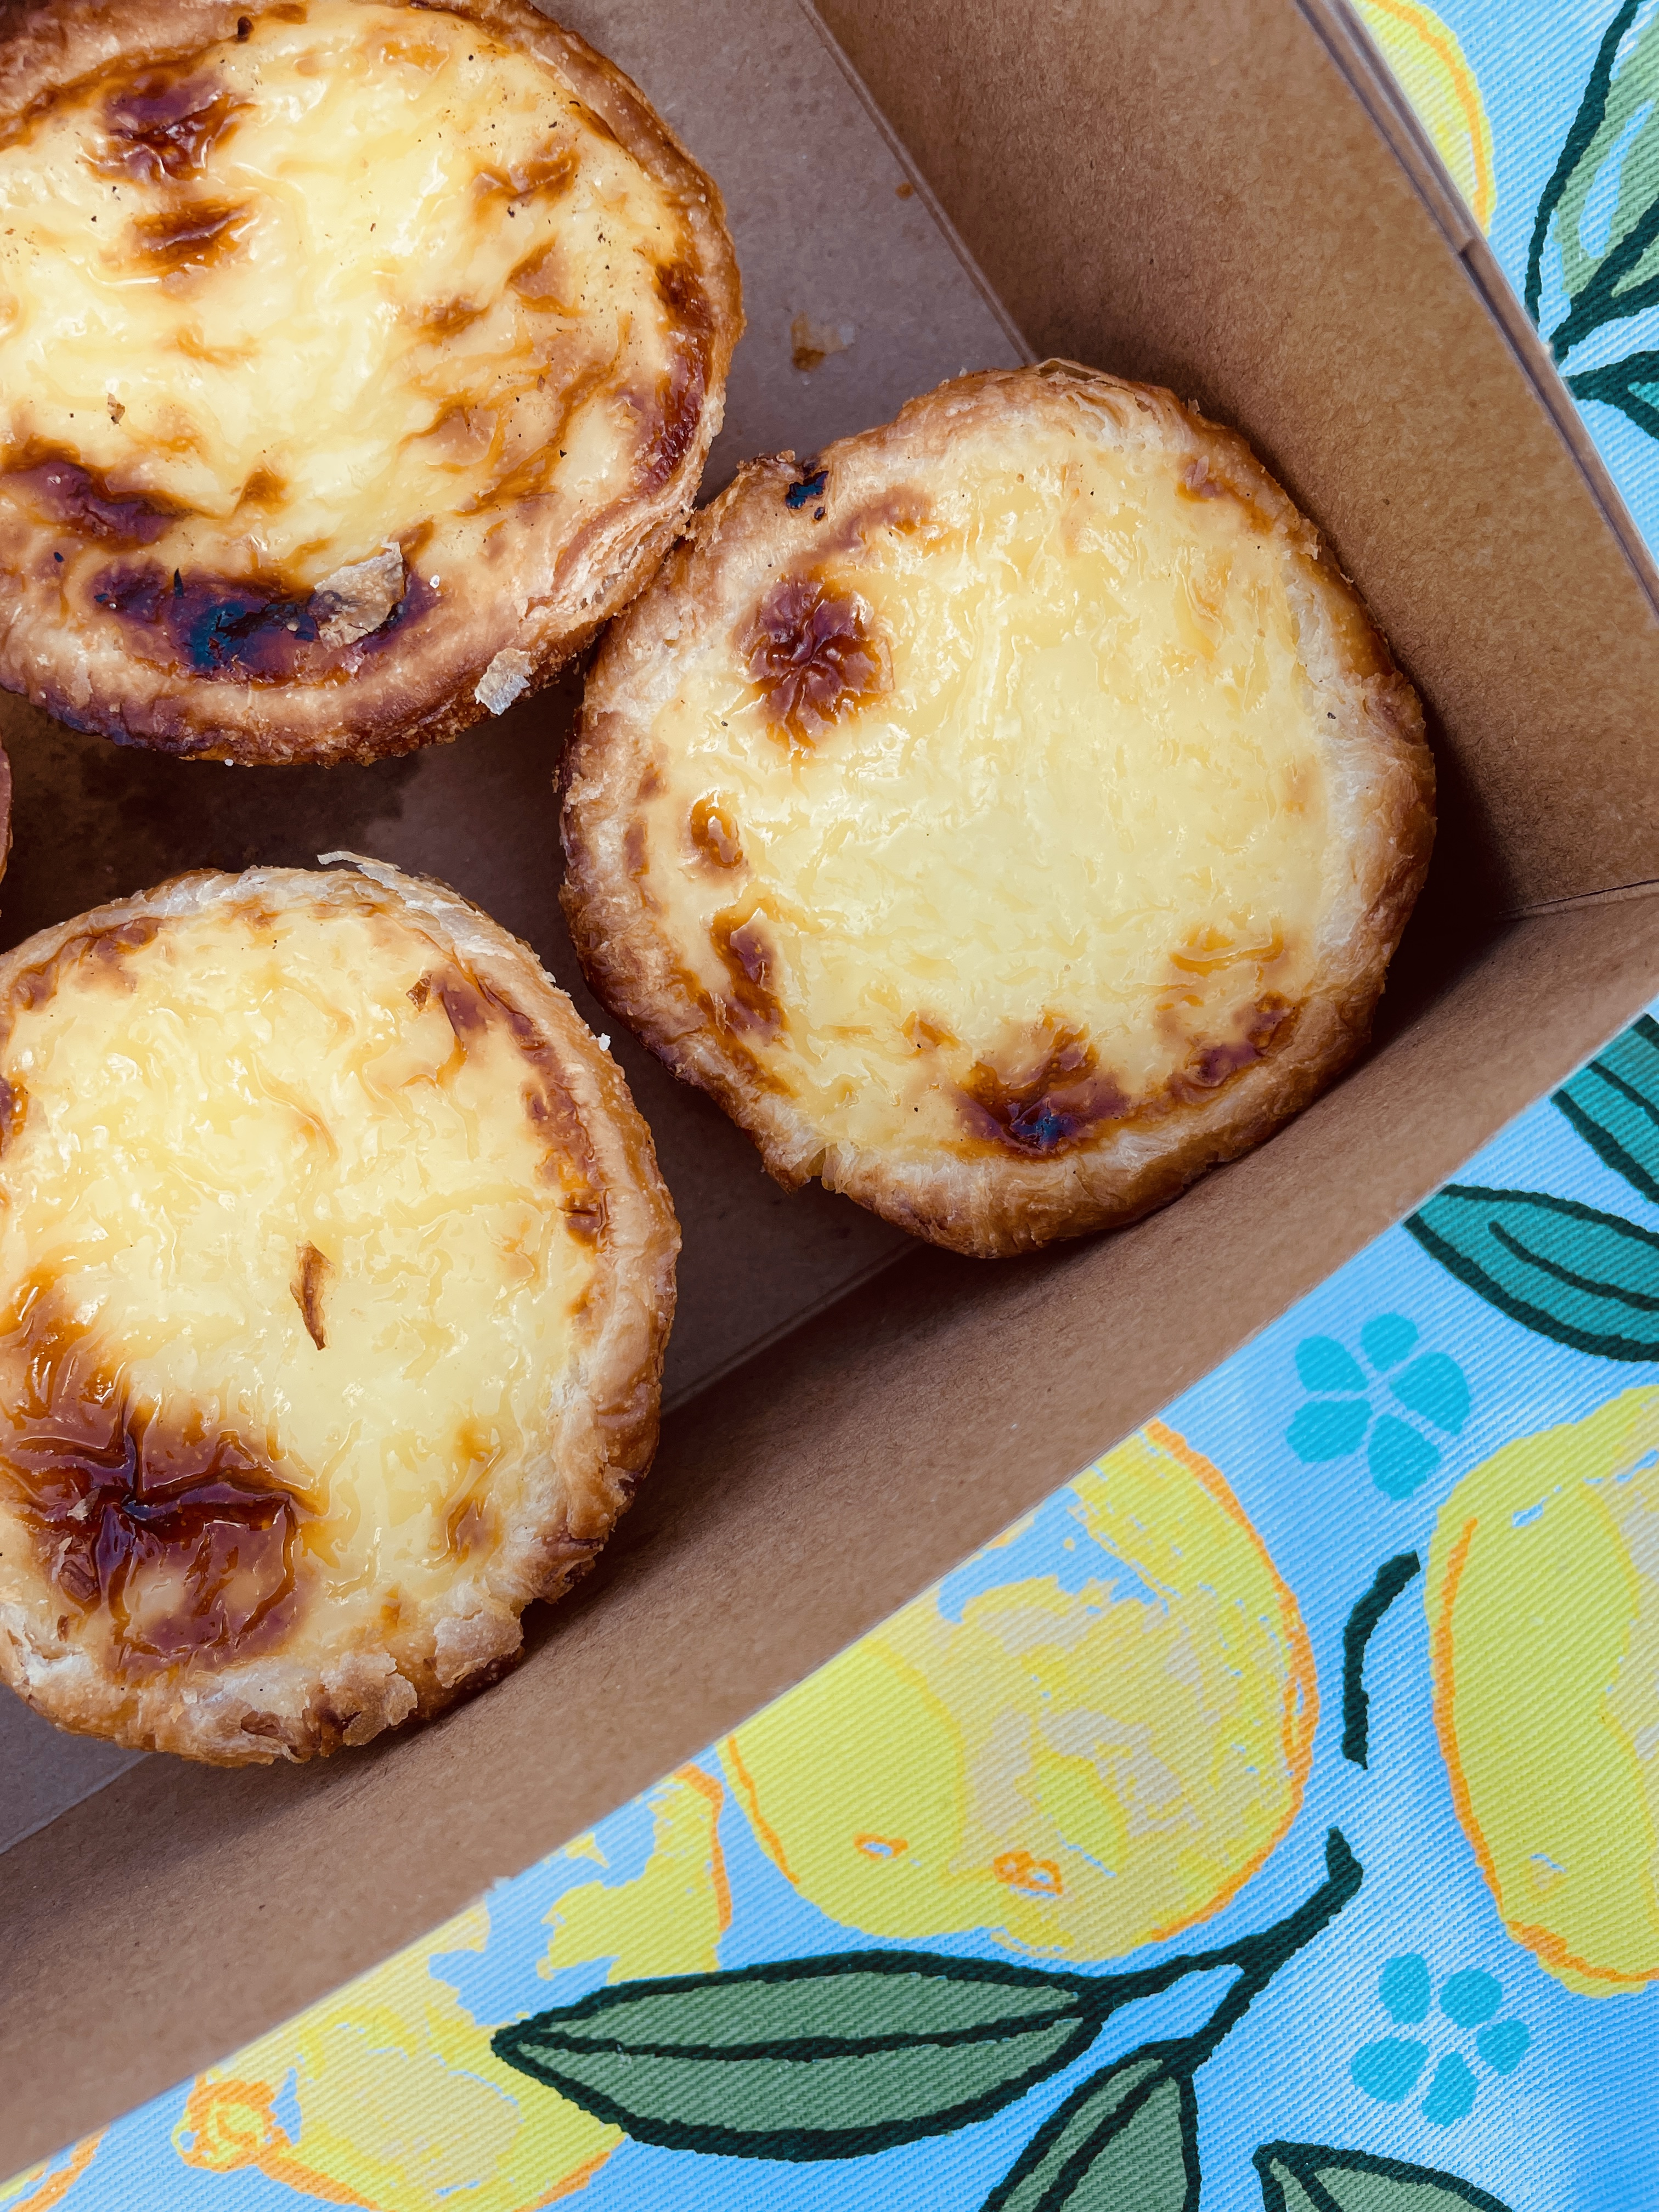 Portuguese tarts in a box